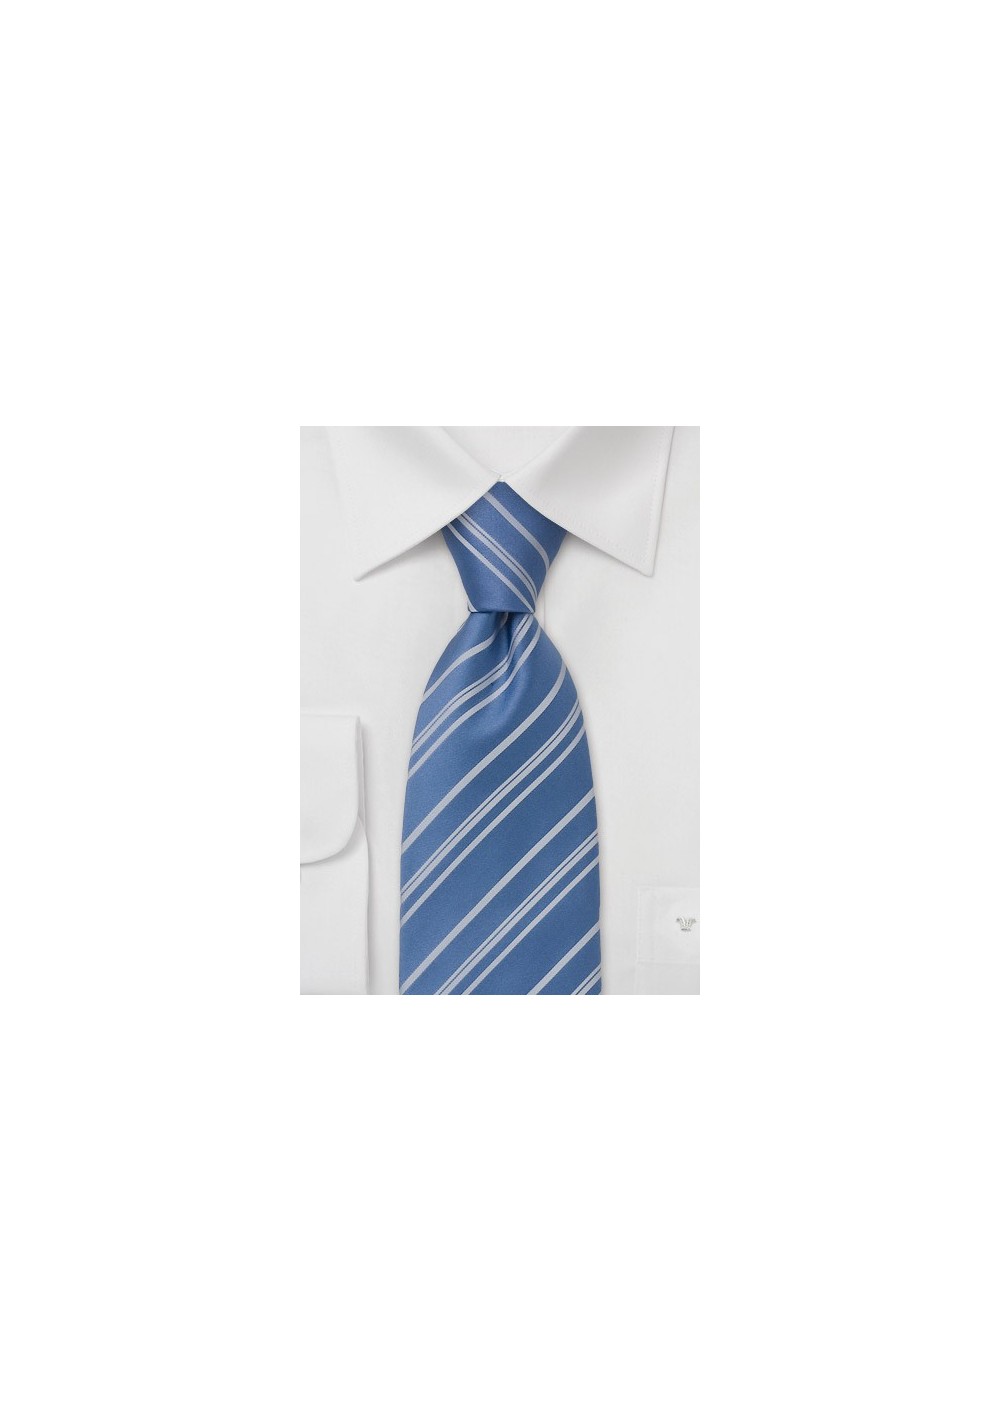 Striped Tie  -  Sky Blue with fine silver stripes